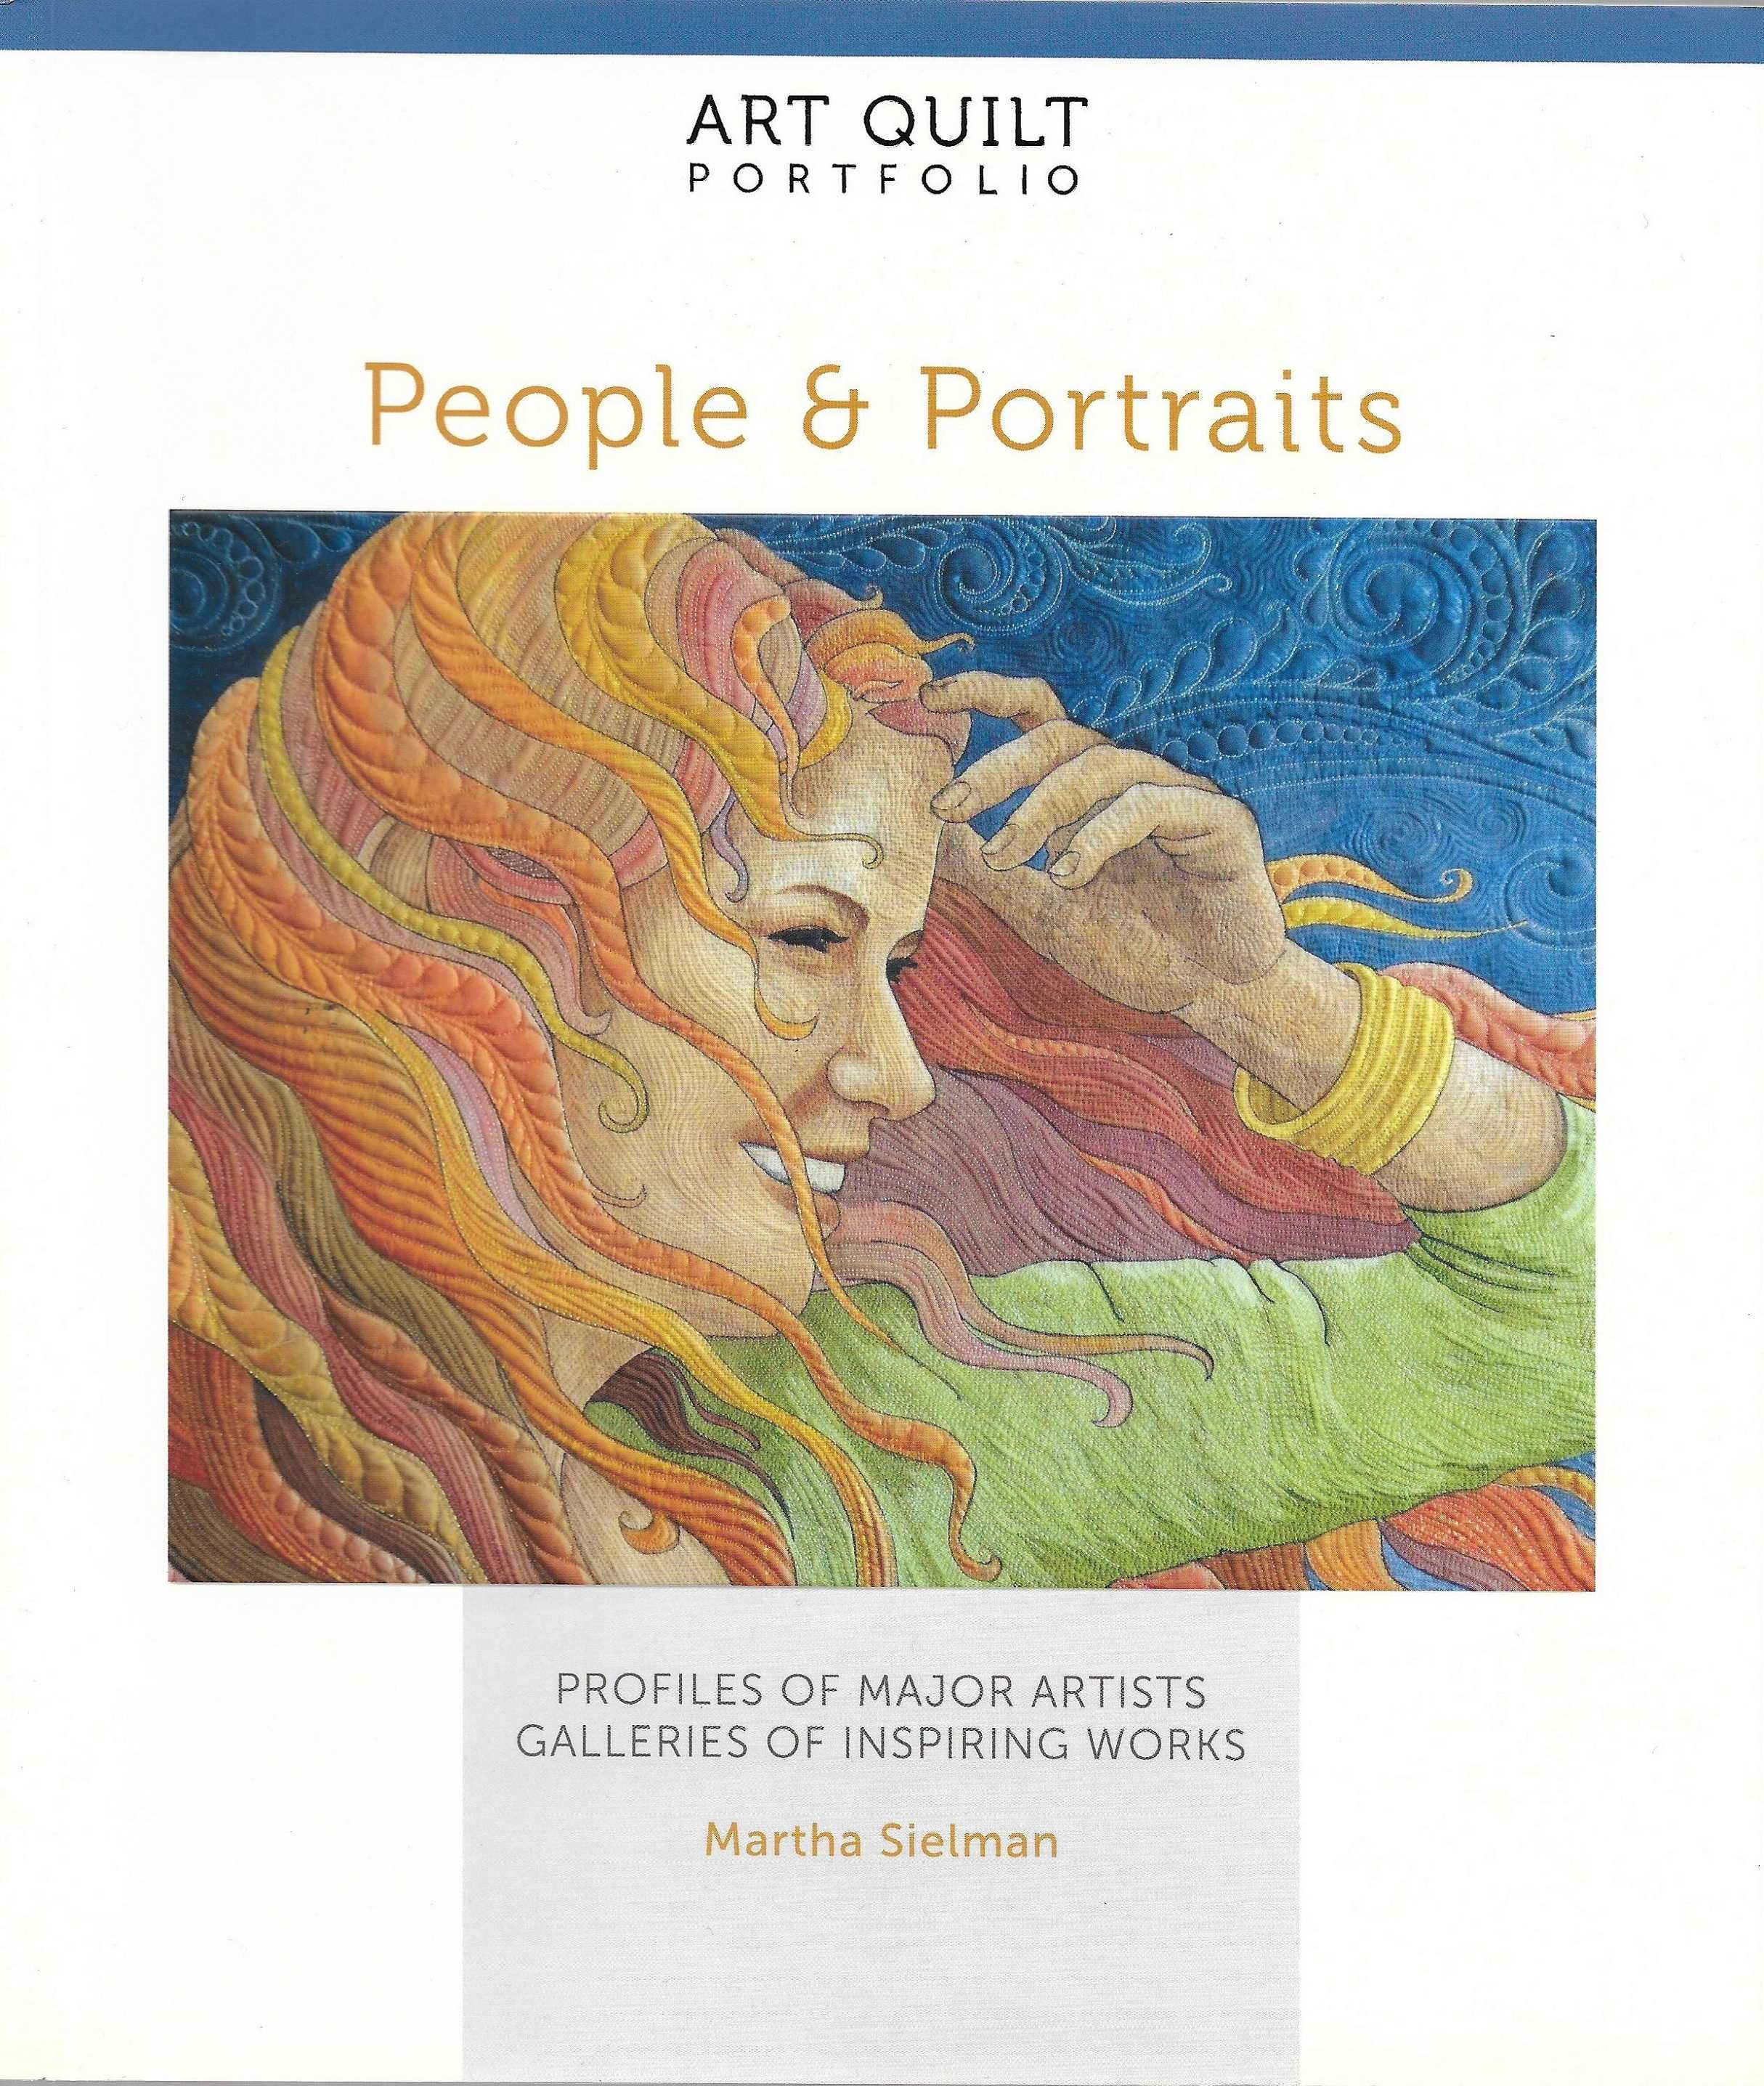 Super carte despre arta Quilt quilting desene persoane si portrete